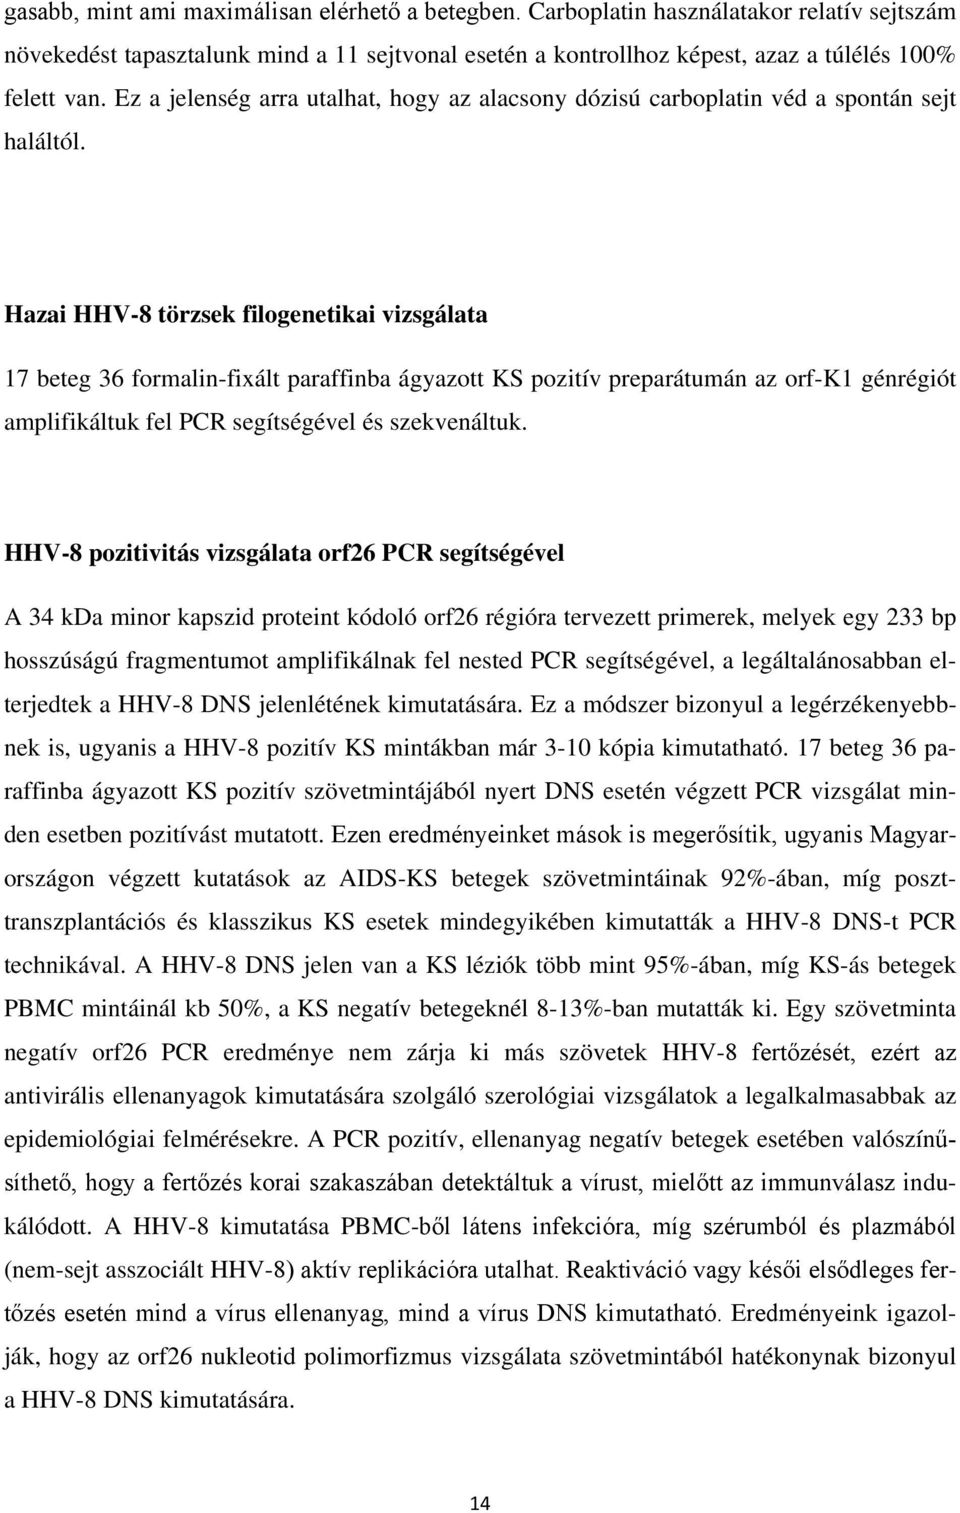 Hazai HHV-8 törzsek filogenetikai vizsgálata 17 beteg 36 formalin-fixált paraffinba ágyazott KS pozitív preparátumán az orf-k1 génrégiót amplifikáltuk fel PCR segítségével és szekvenáltuk.